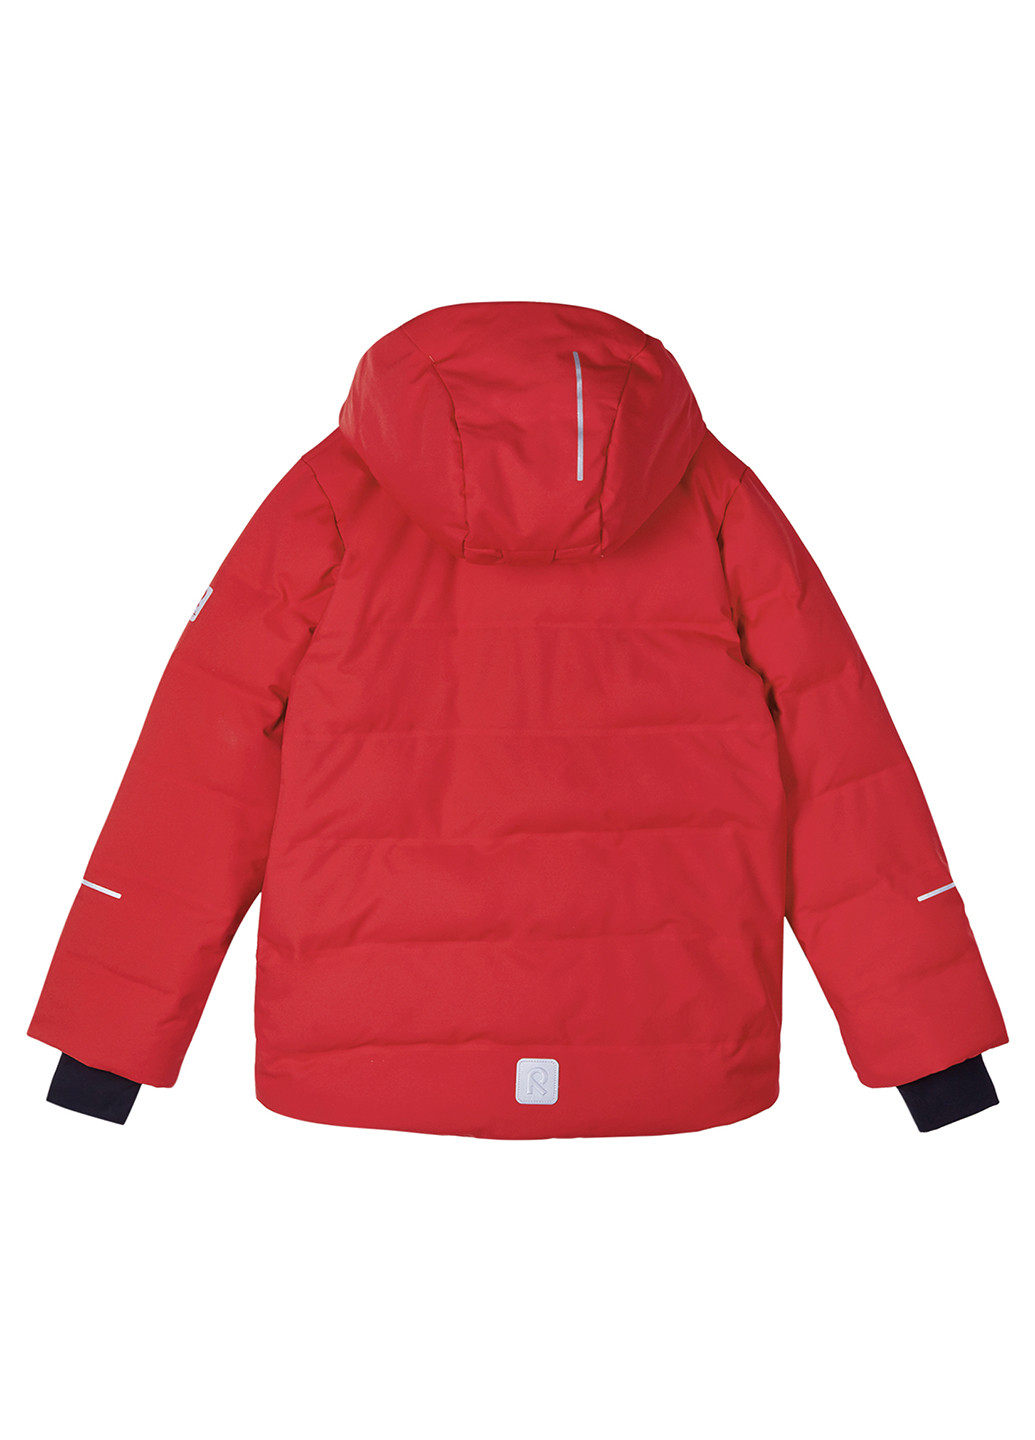 Червона зимня куртка пухова Reima Vaattunki